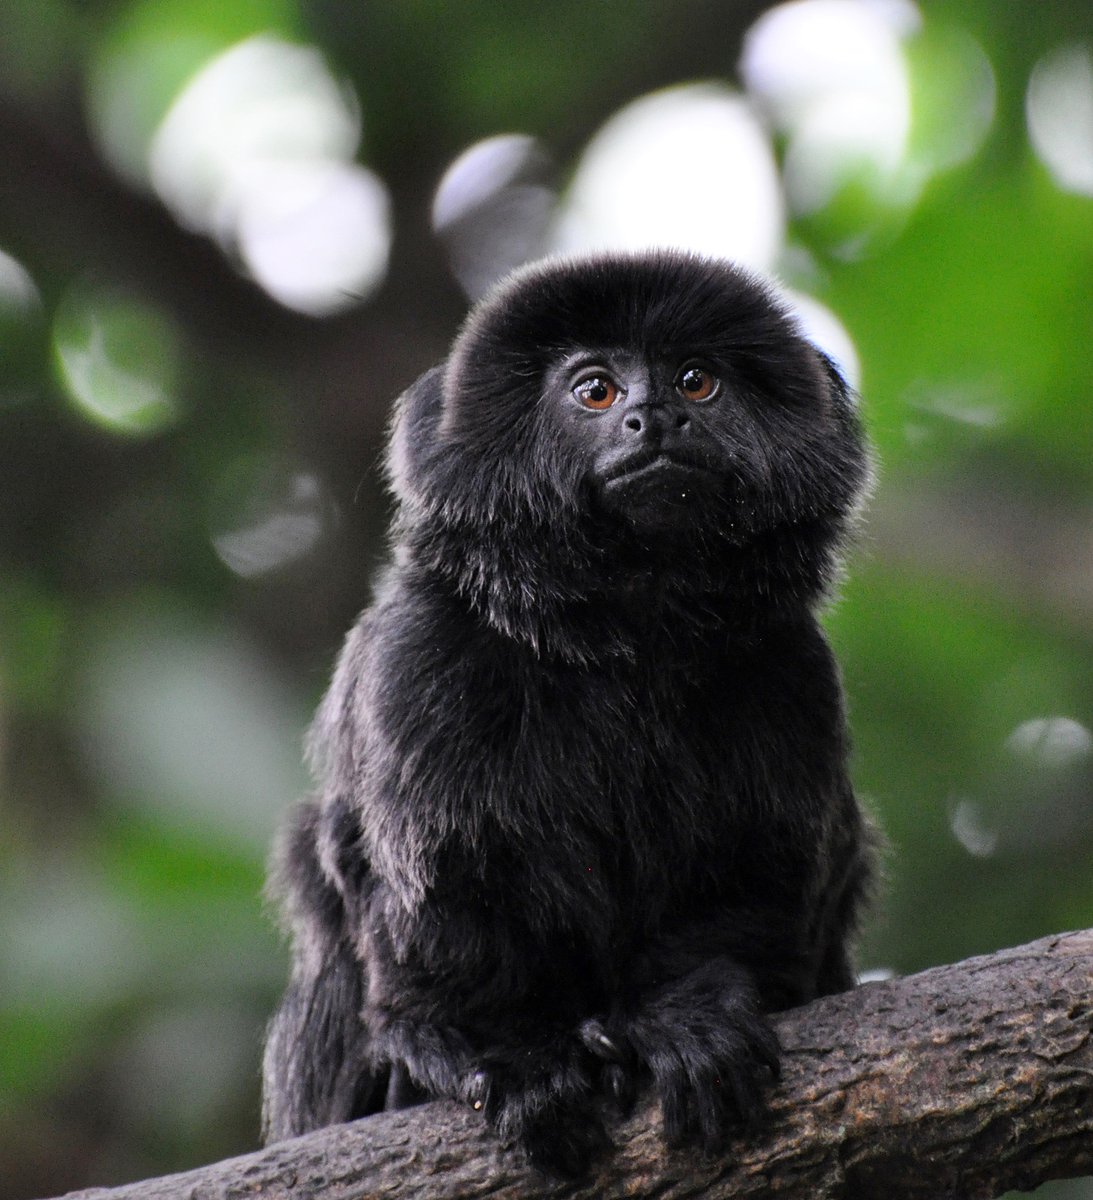 Autoridades lograron recuperar al pequeño mono que había sido robado del zoológico de Florida